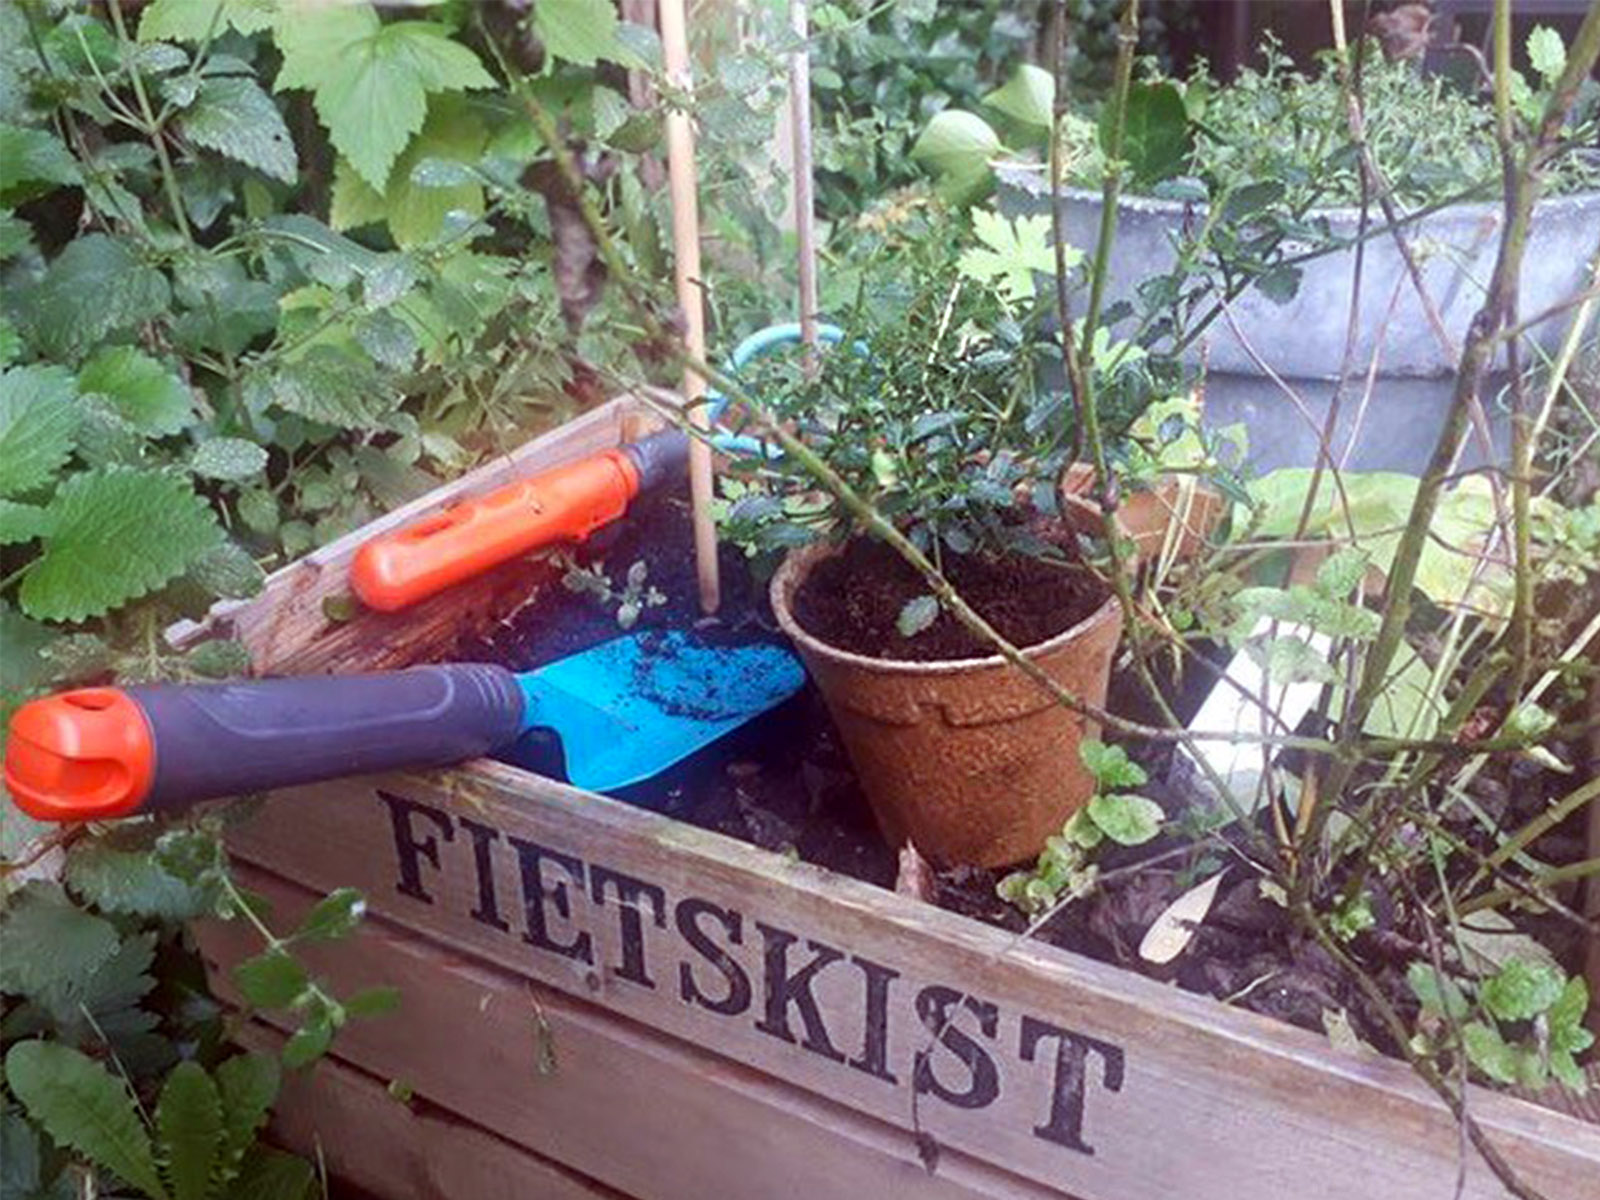 Plantics Fietskist - on Thursd